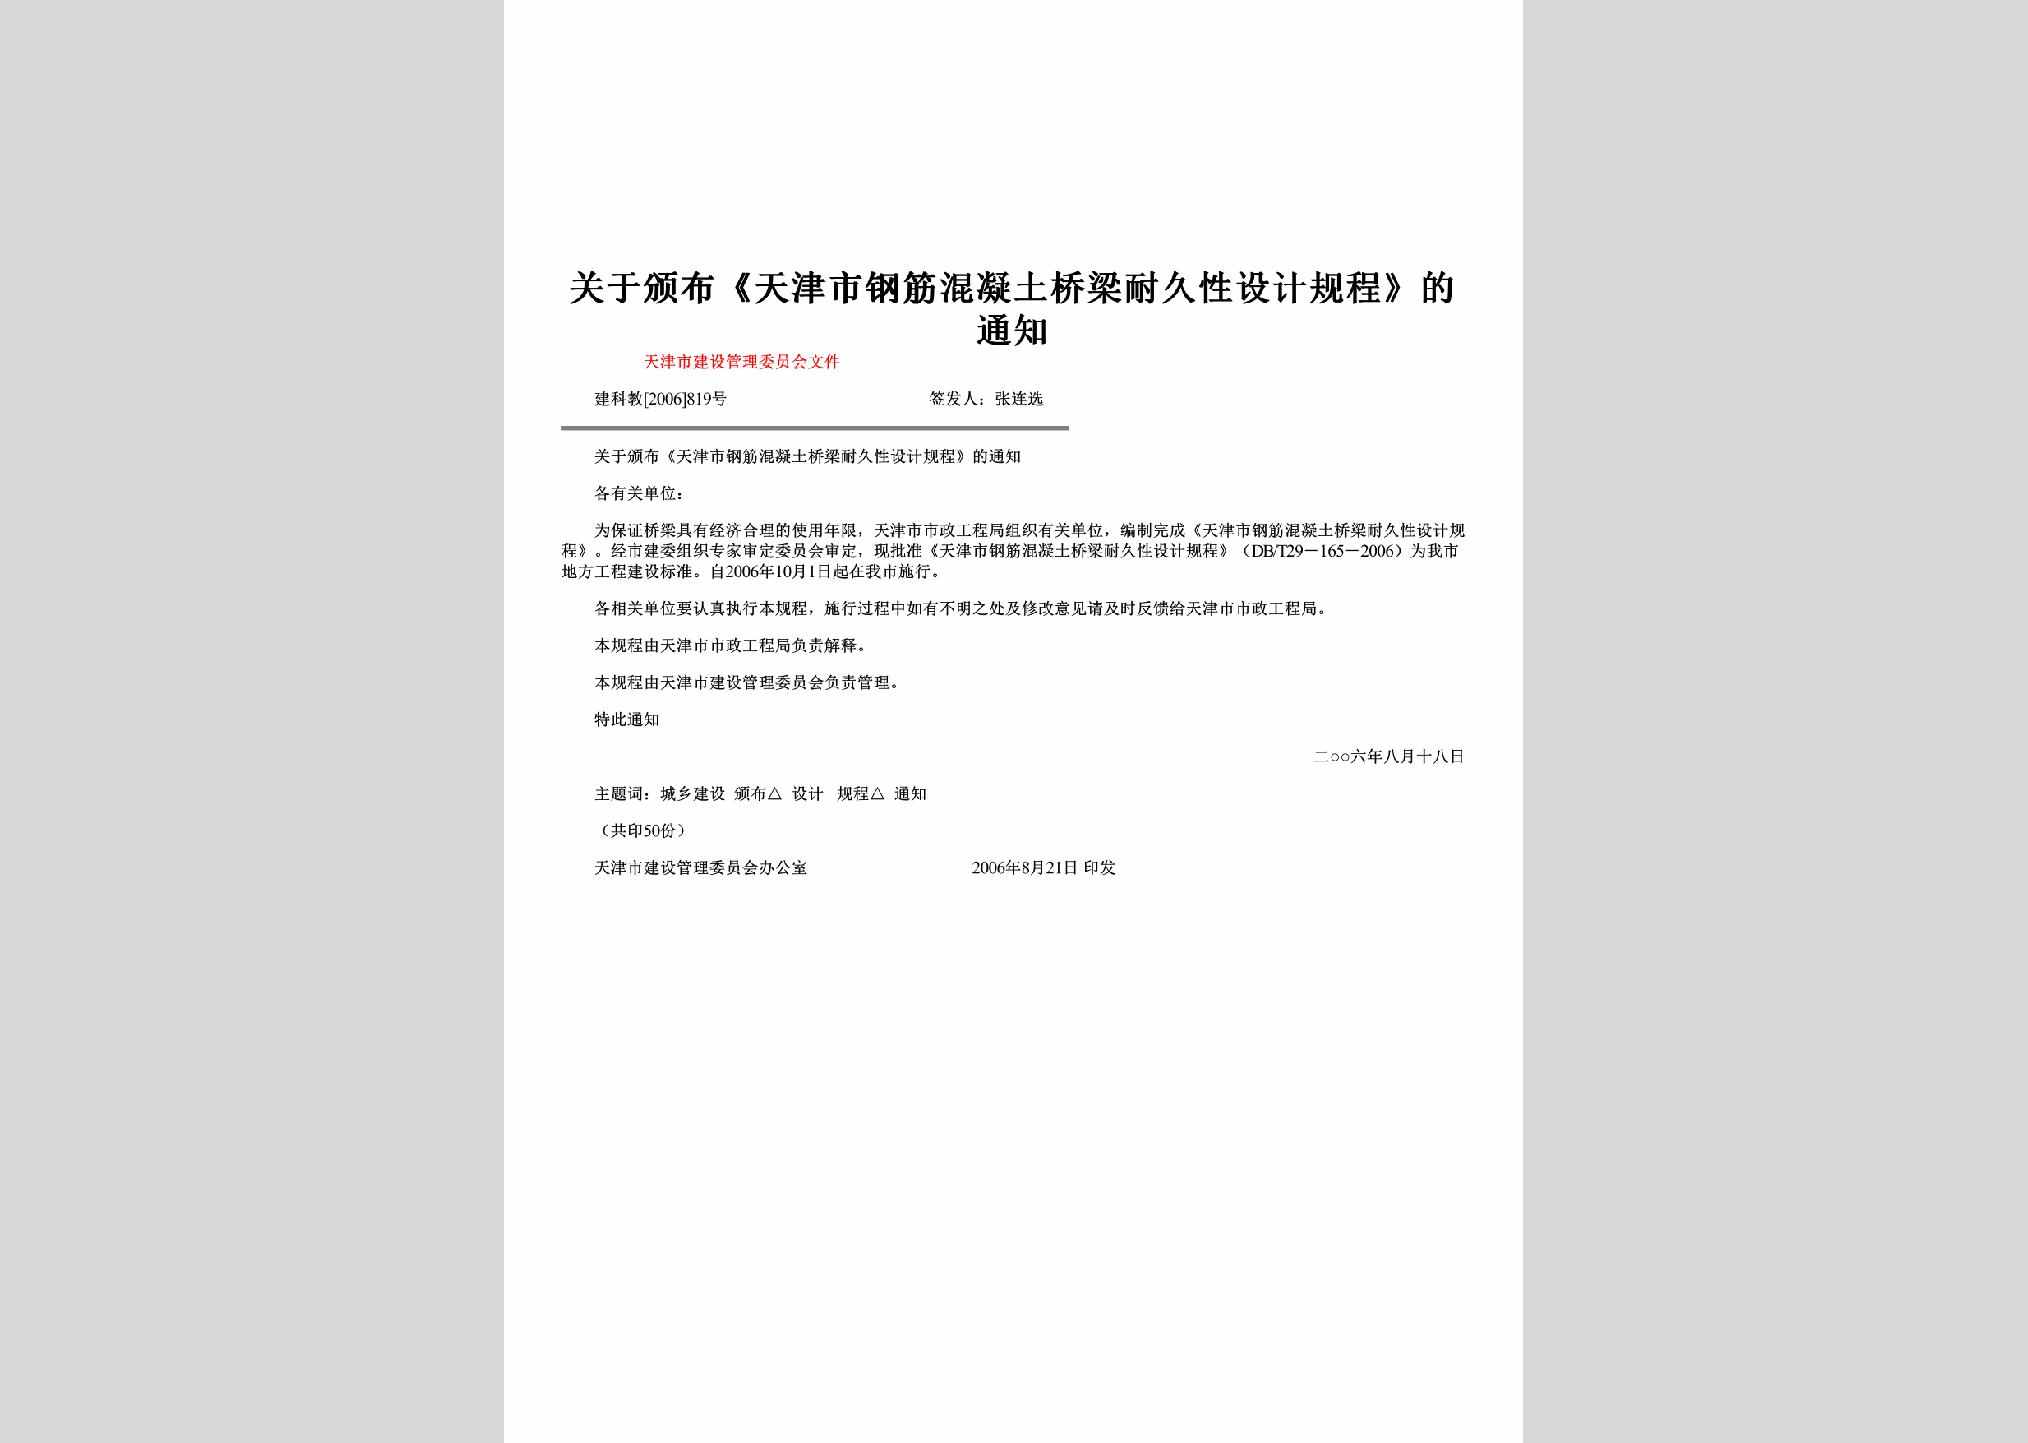 建科教[2006]819号：关于颁布《天津市钢筋混凝土桥梁耐久性设计规程》的通知